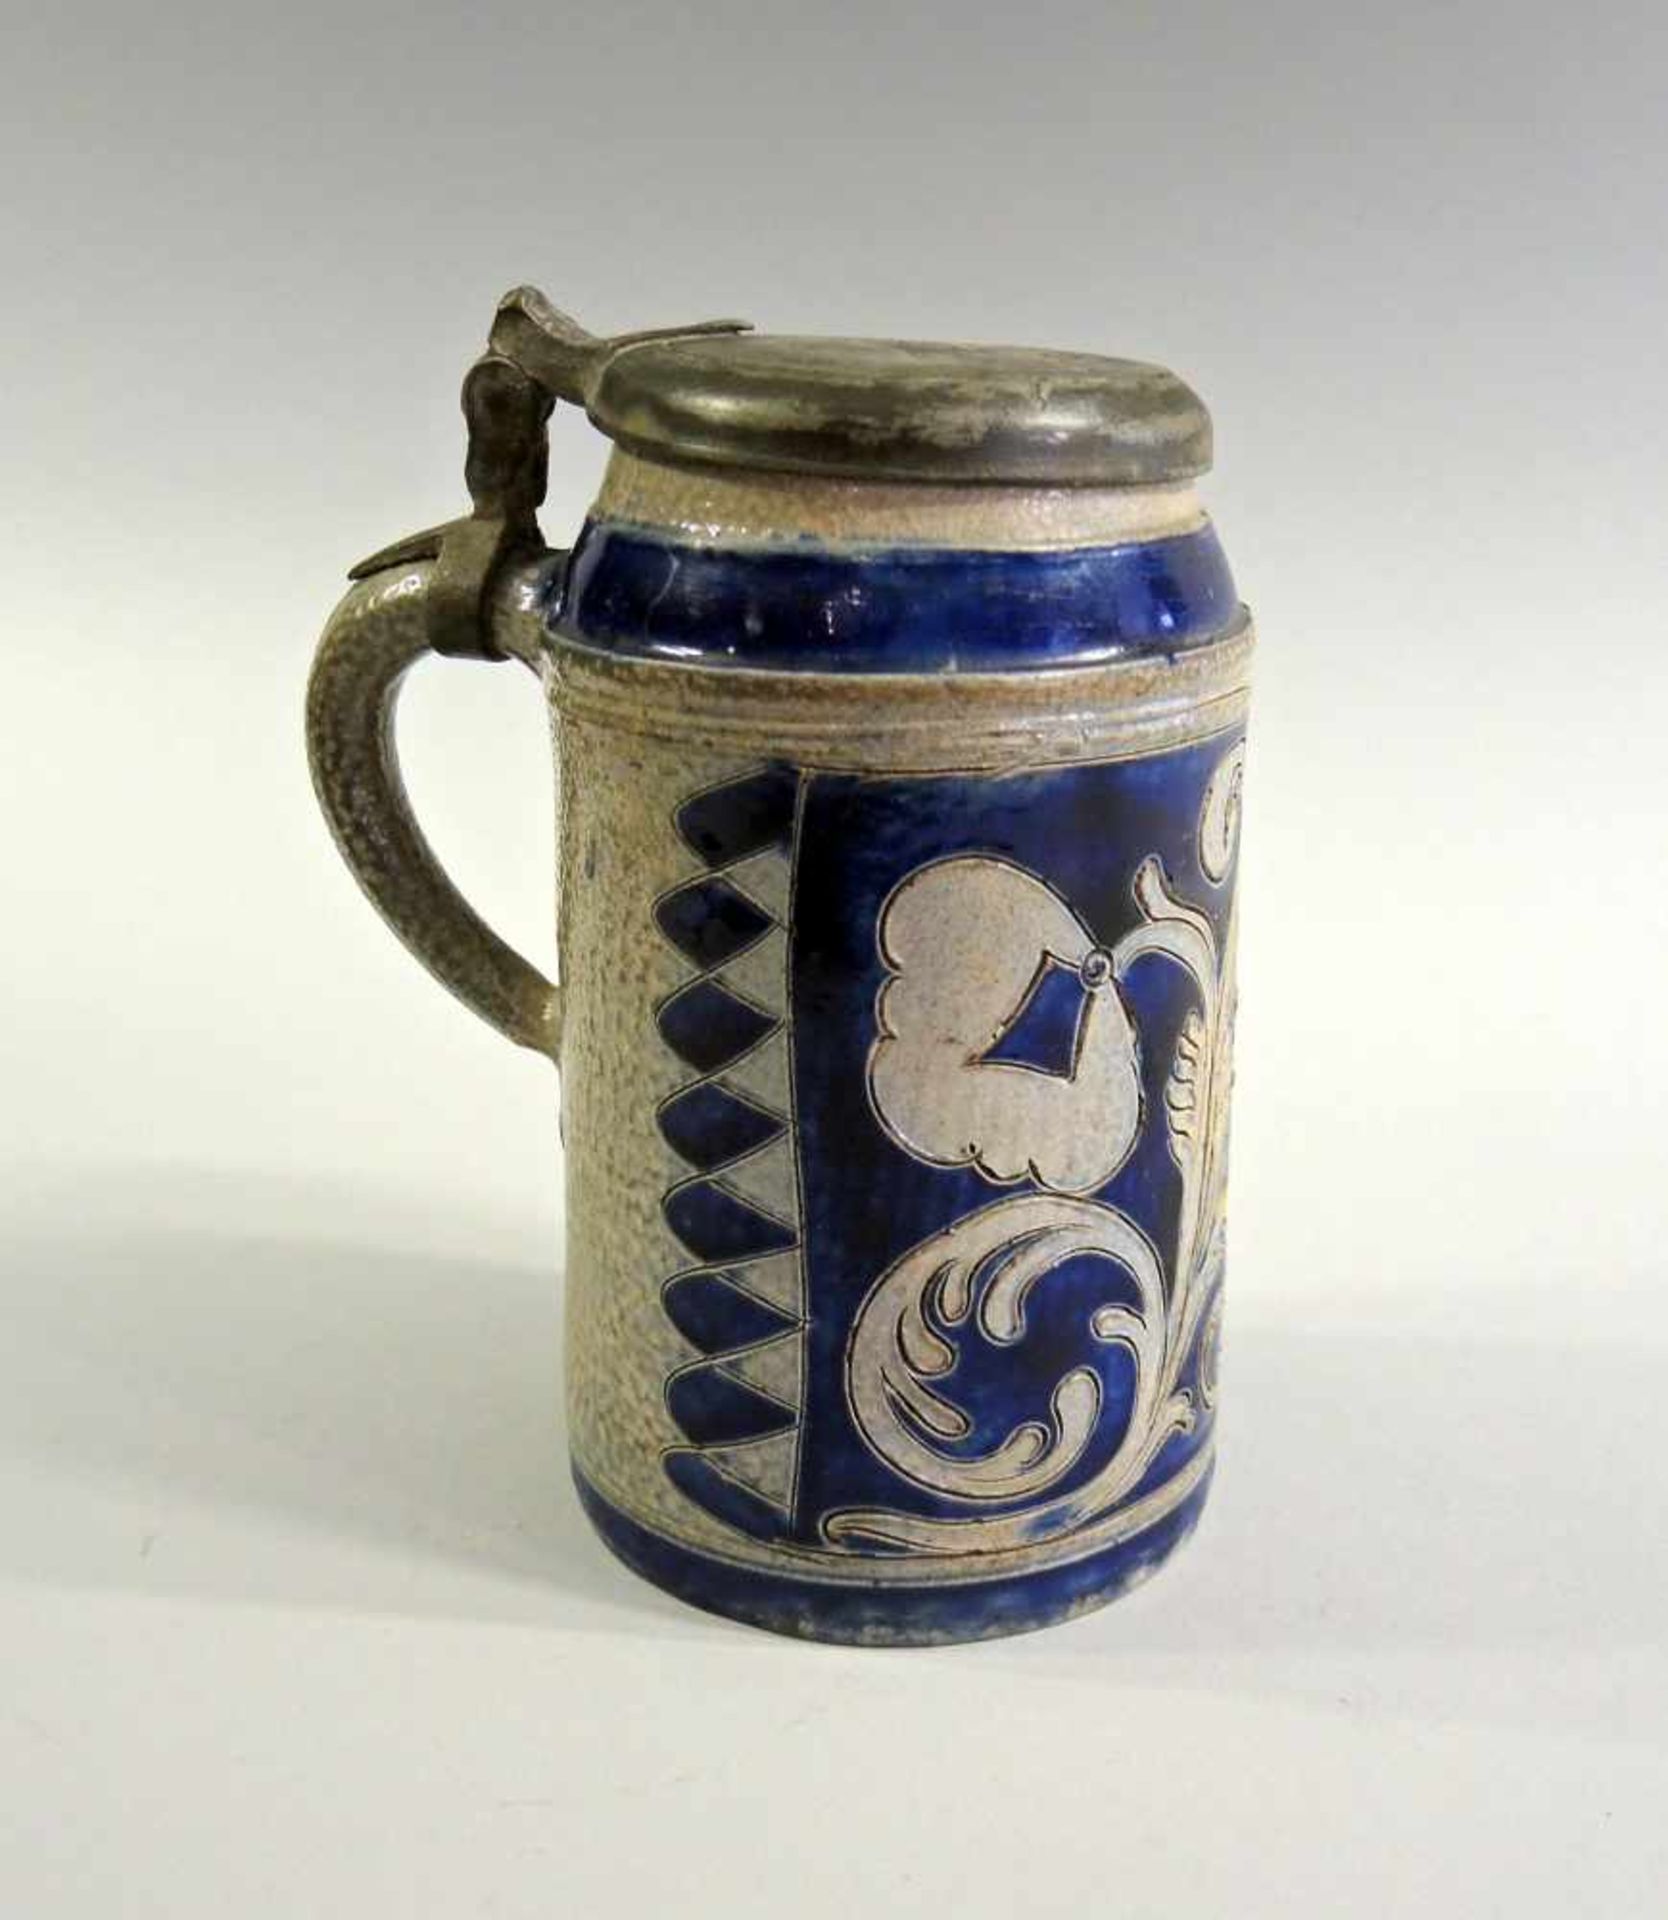 Bierhumpen Keramik, mit Zinndeckel, undeutlich graviert. Verzierte Wandung mit eingeritztem